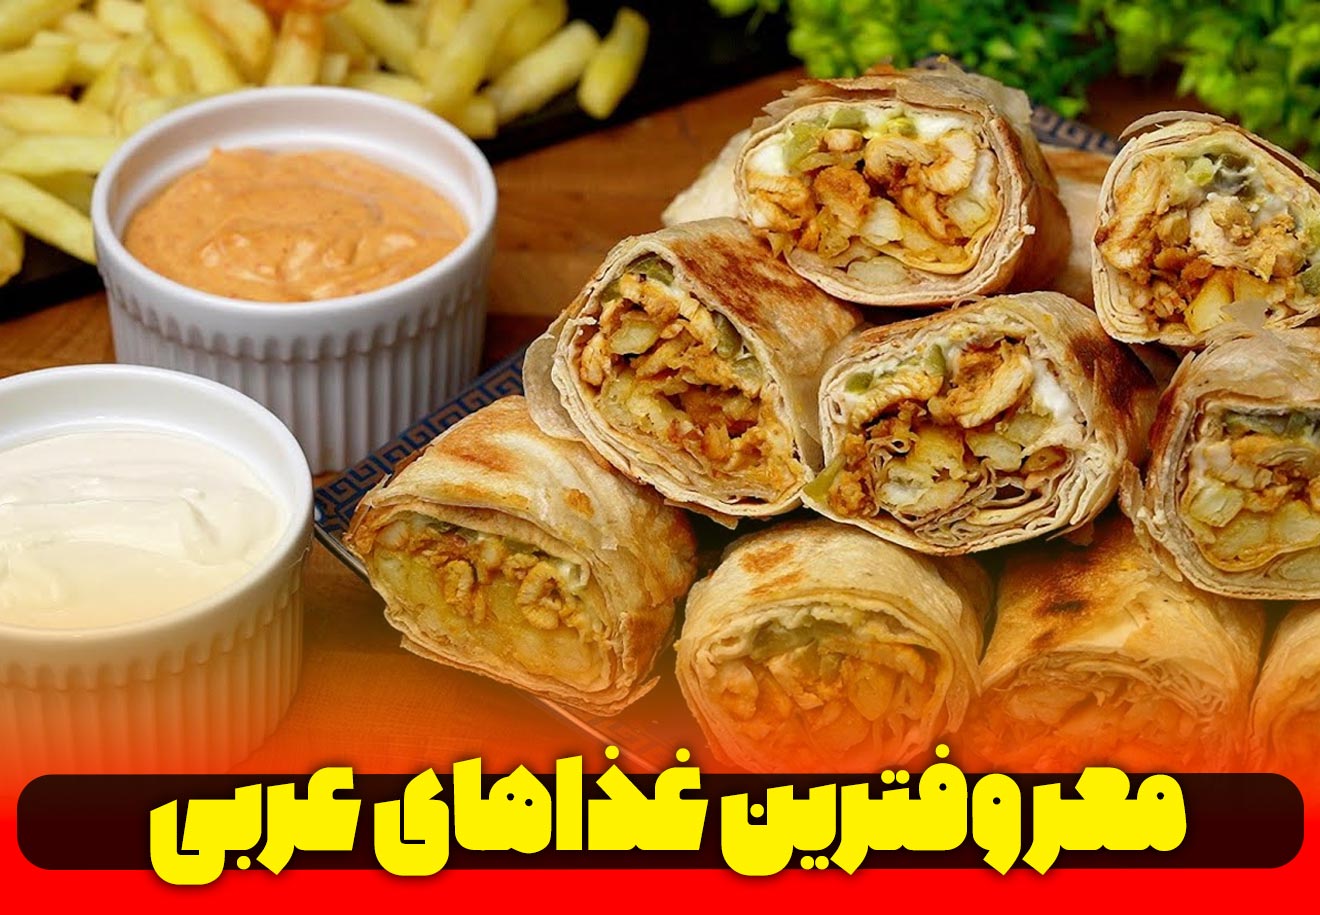 معروف ترین غذاهای کشور های عربی